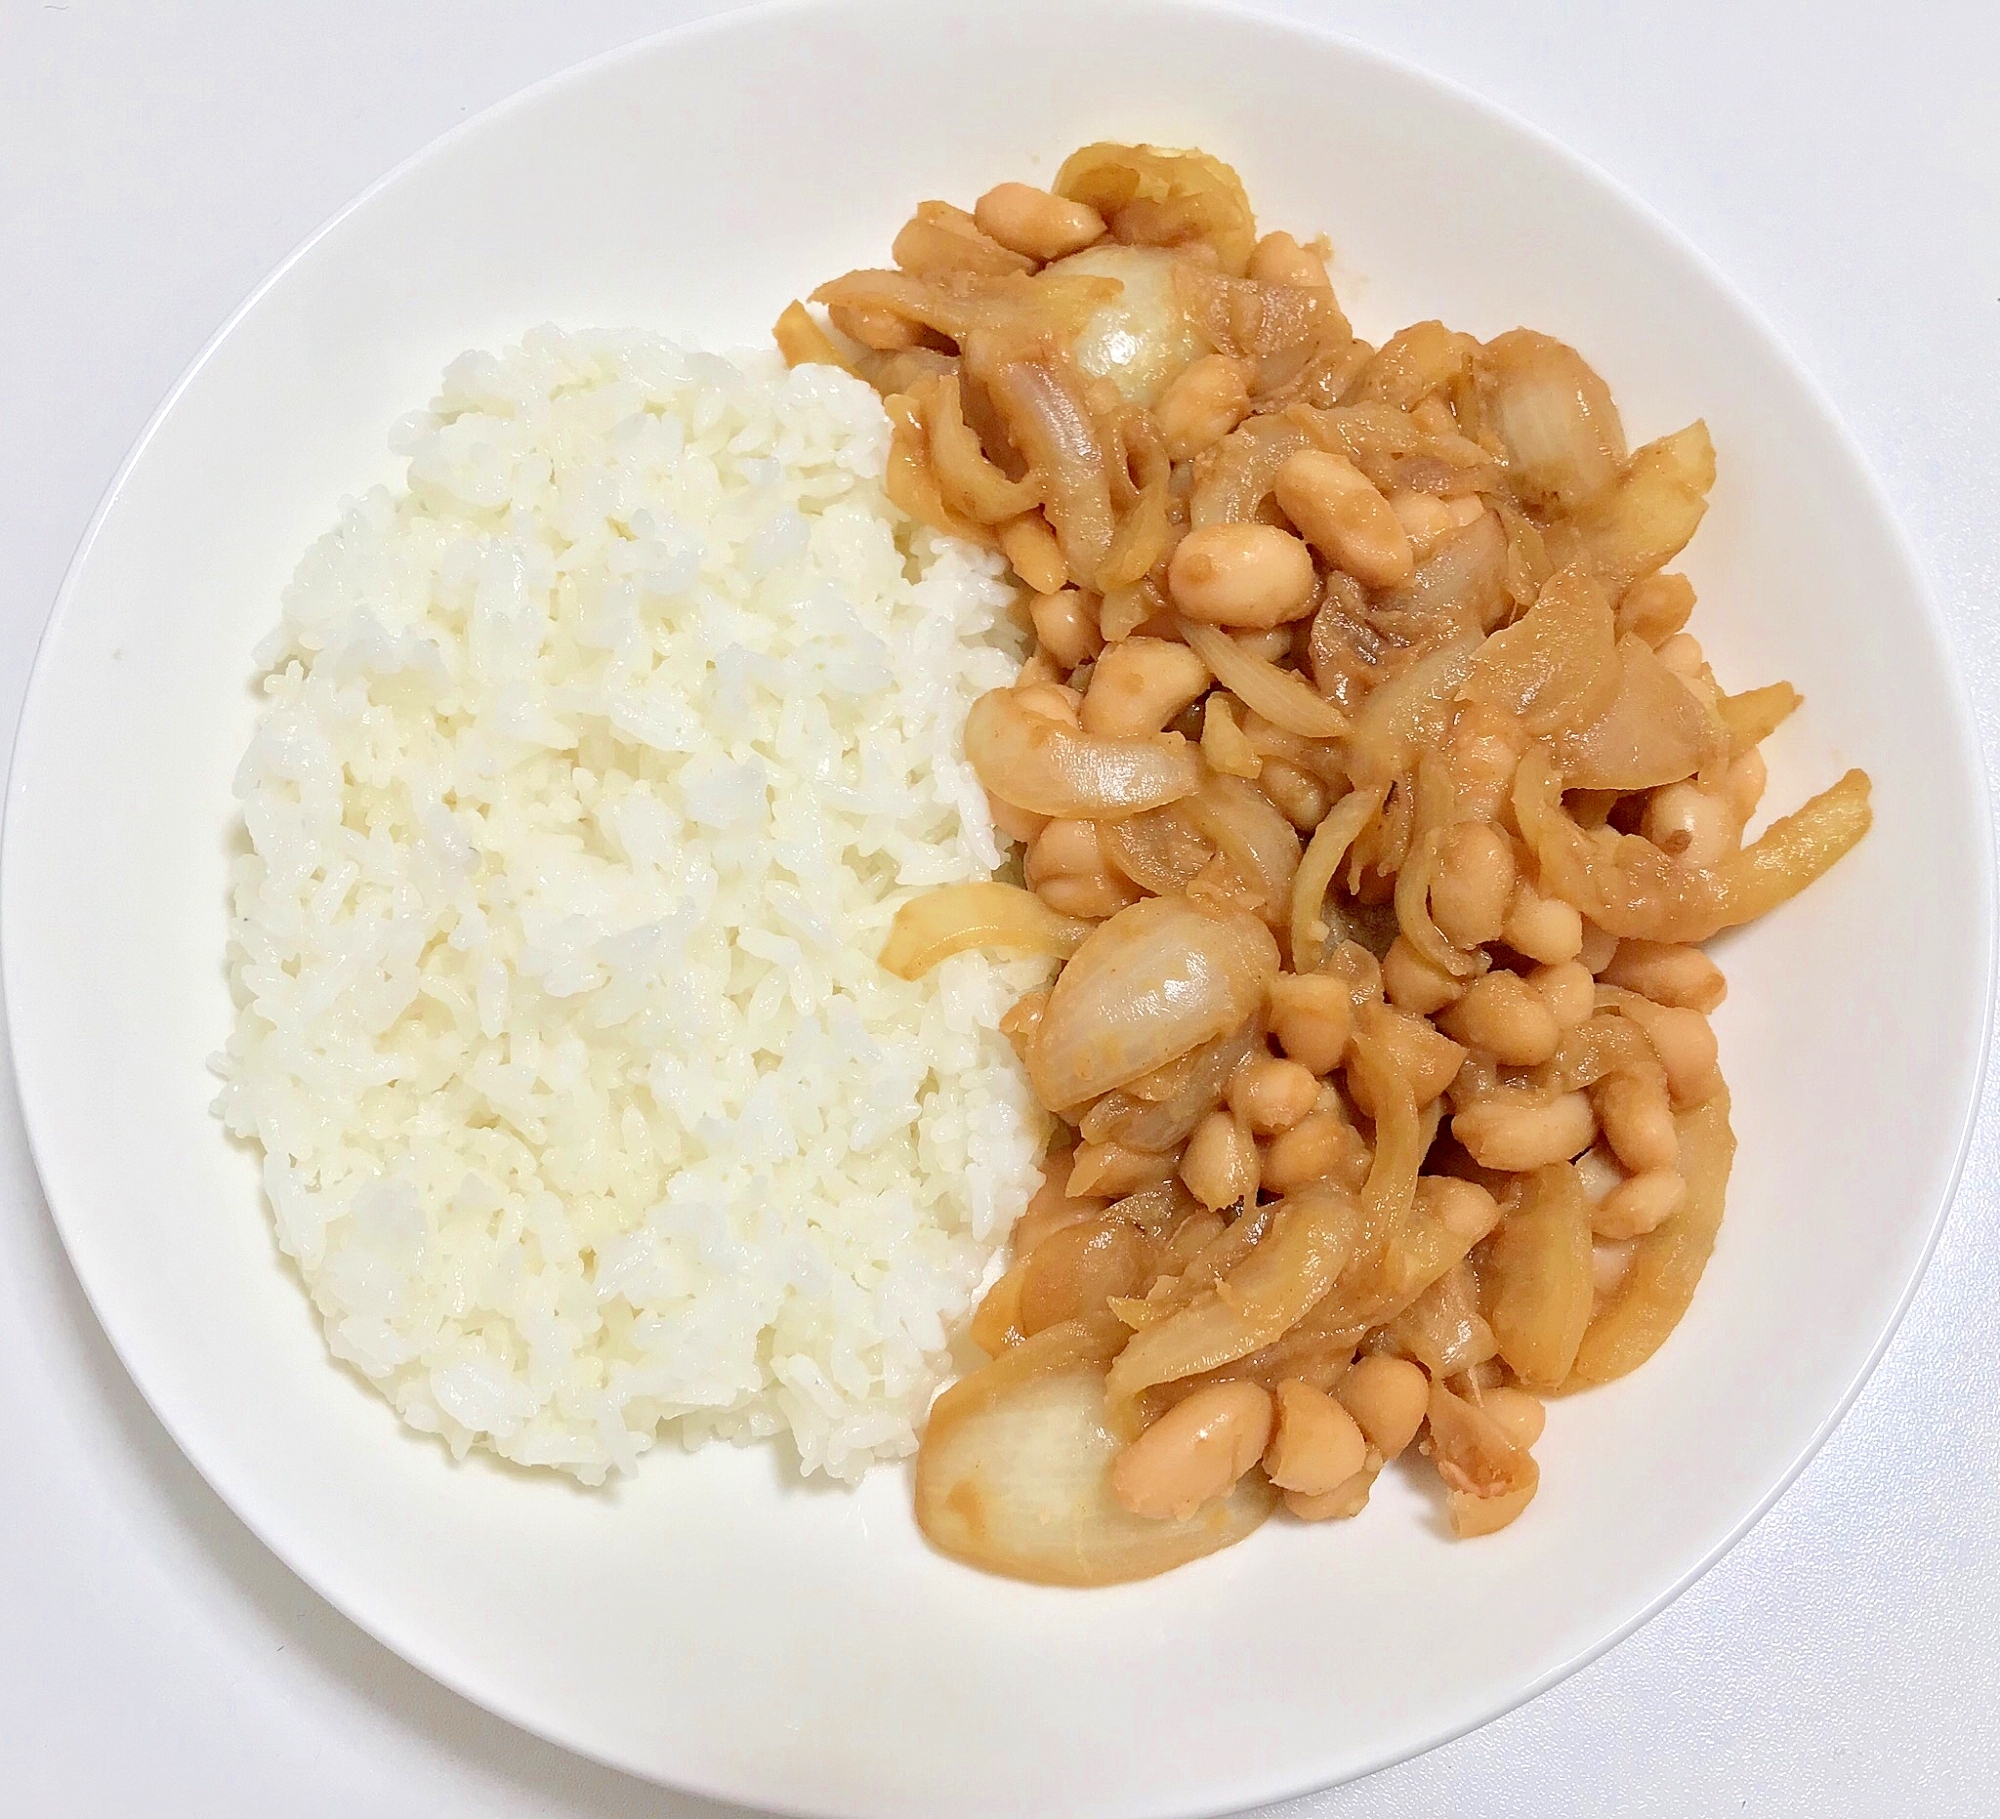 （豆）白いんげん豆の生姜焼き